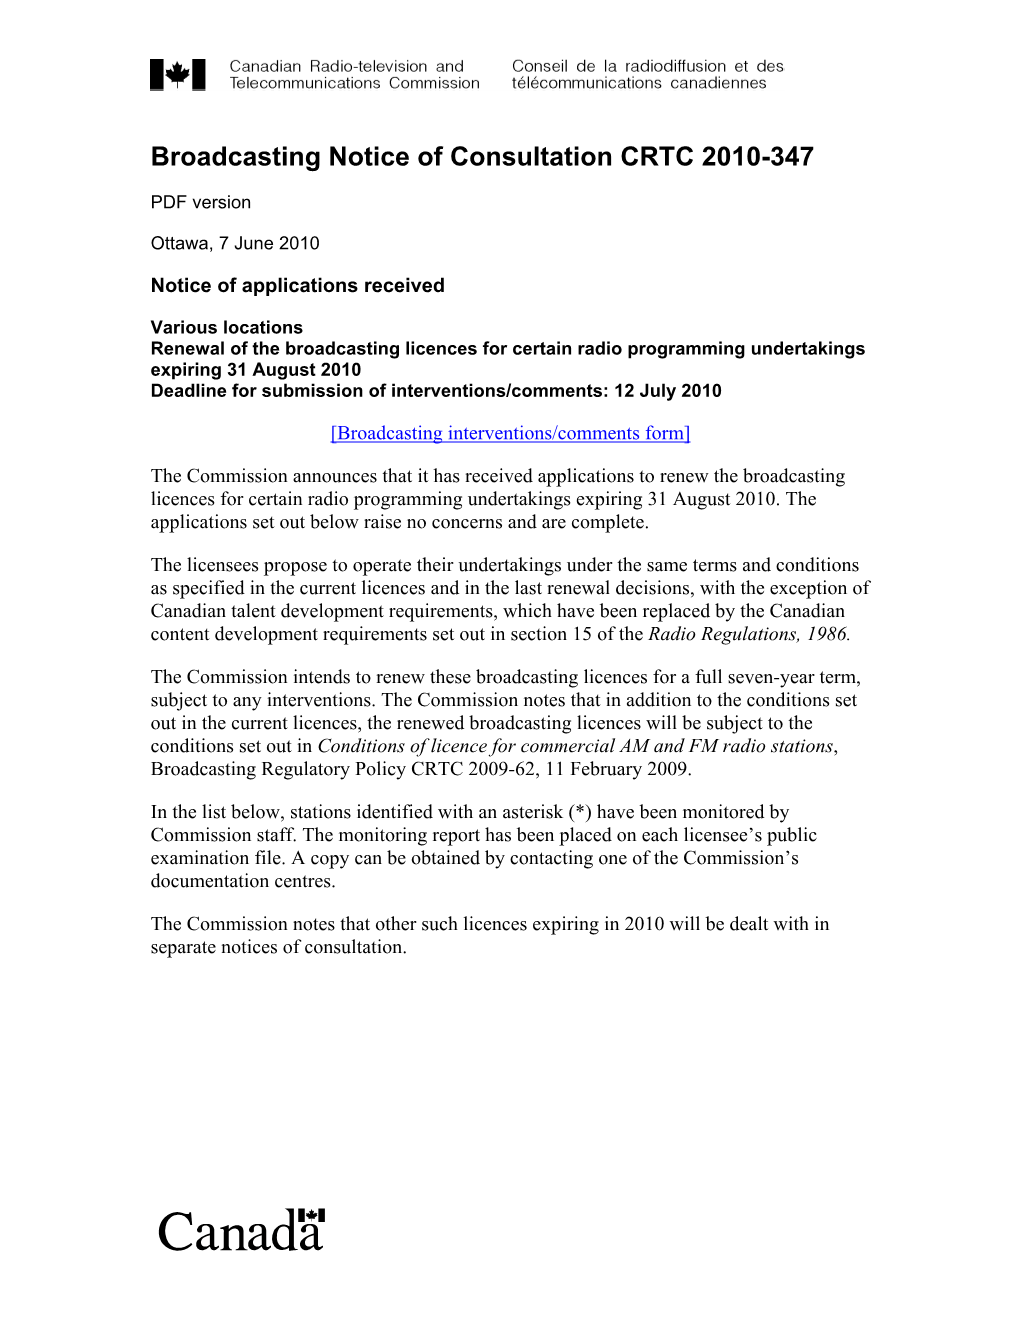 Broadcasting Notice of Consultation CRTC 2010-347